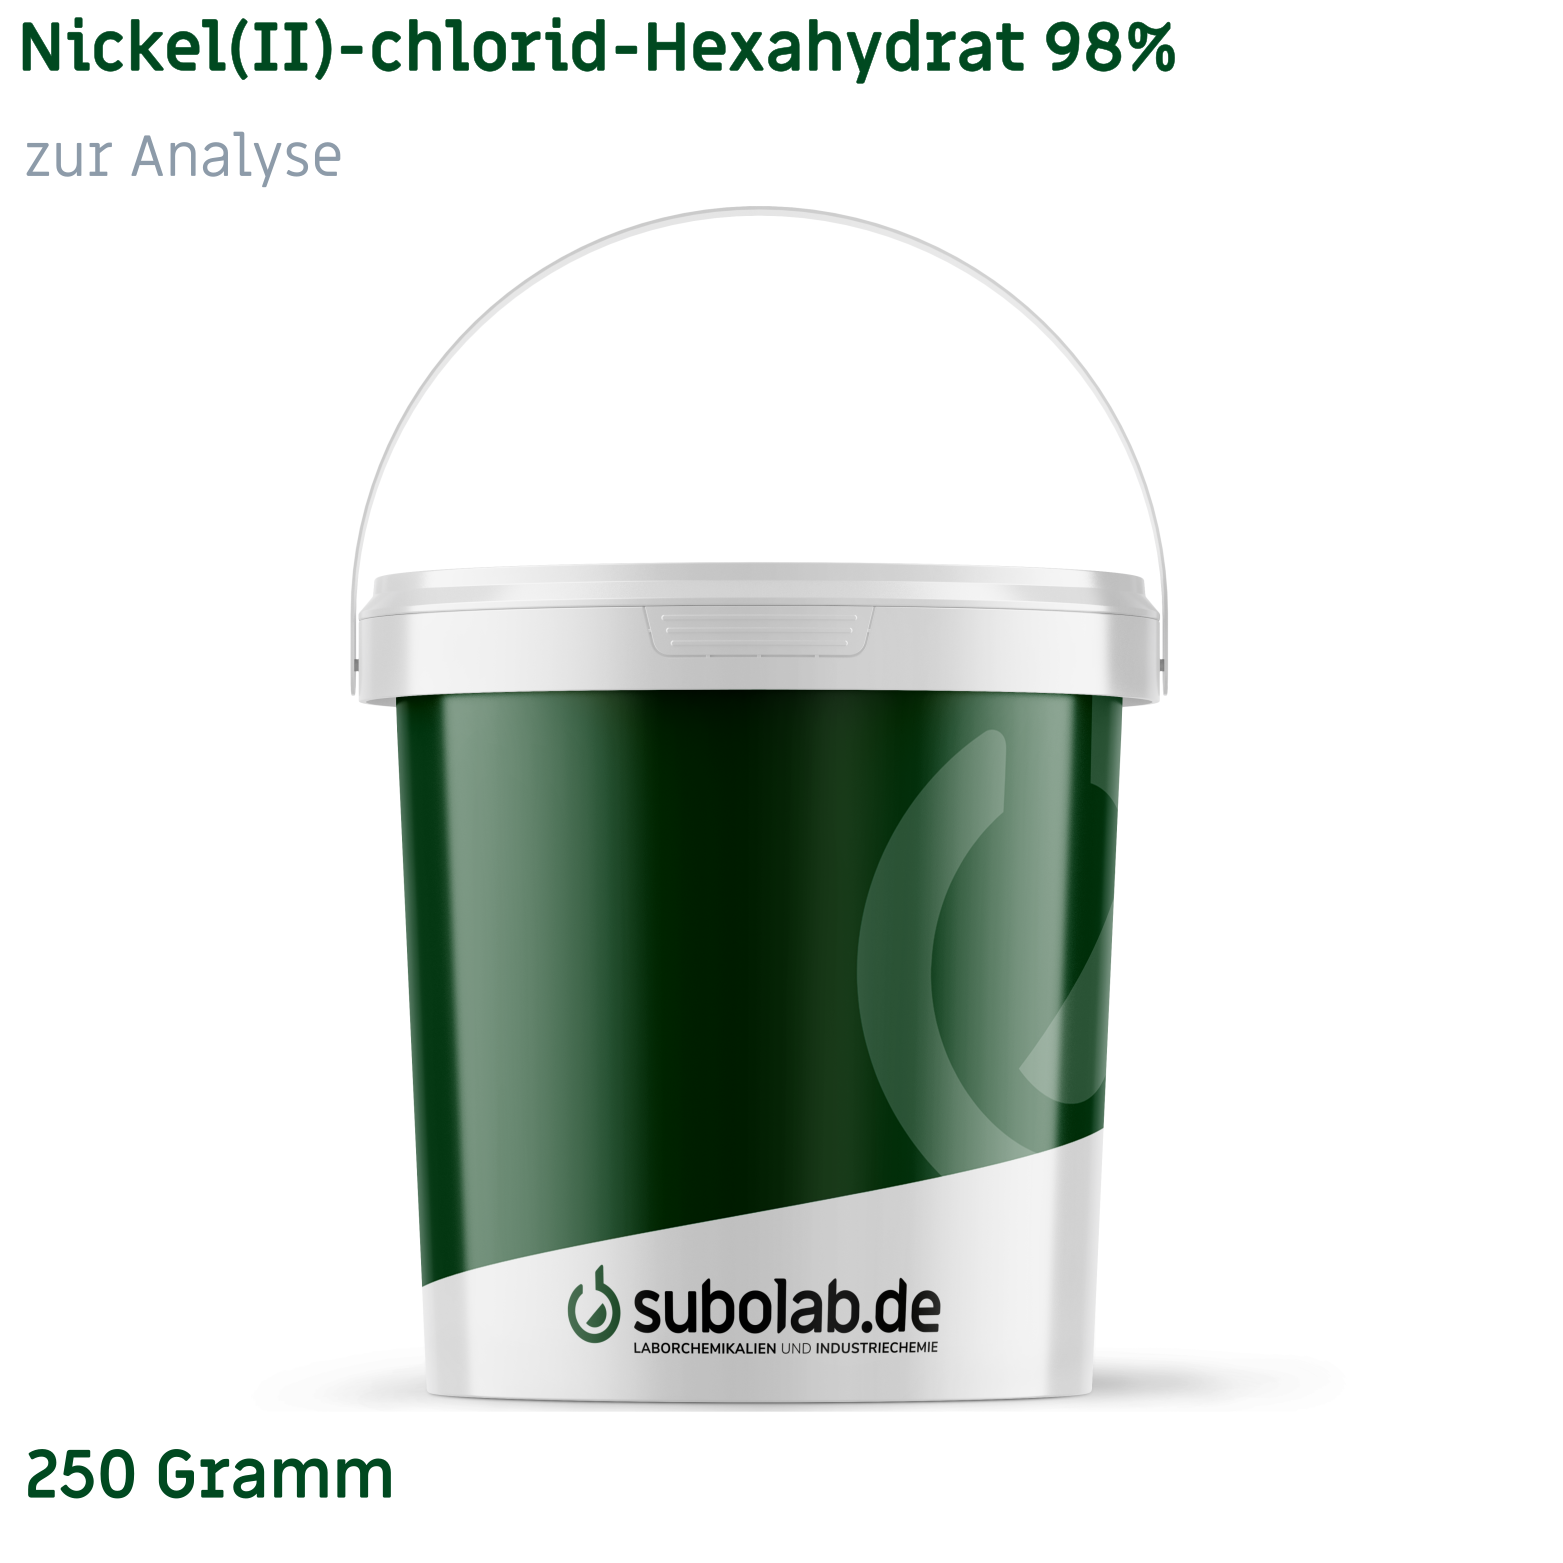 Bild von Nickel(II)-chlorid - Hexahydrat 98% zur Analyse (250 Gramm)